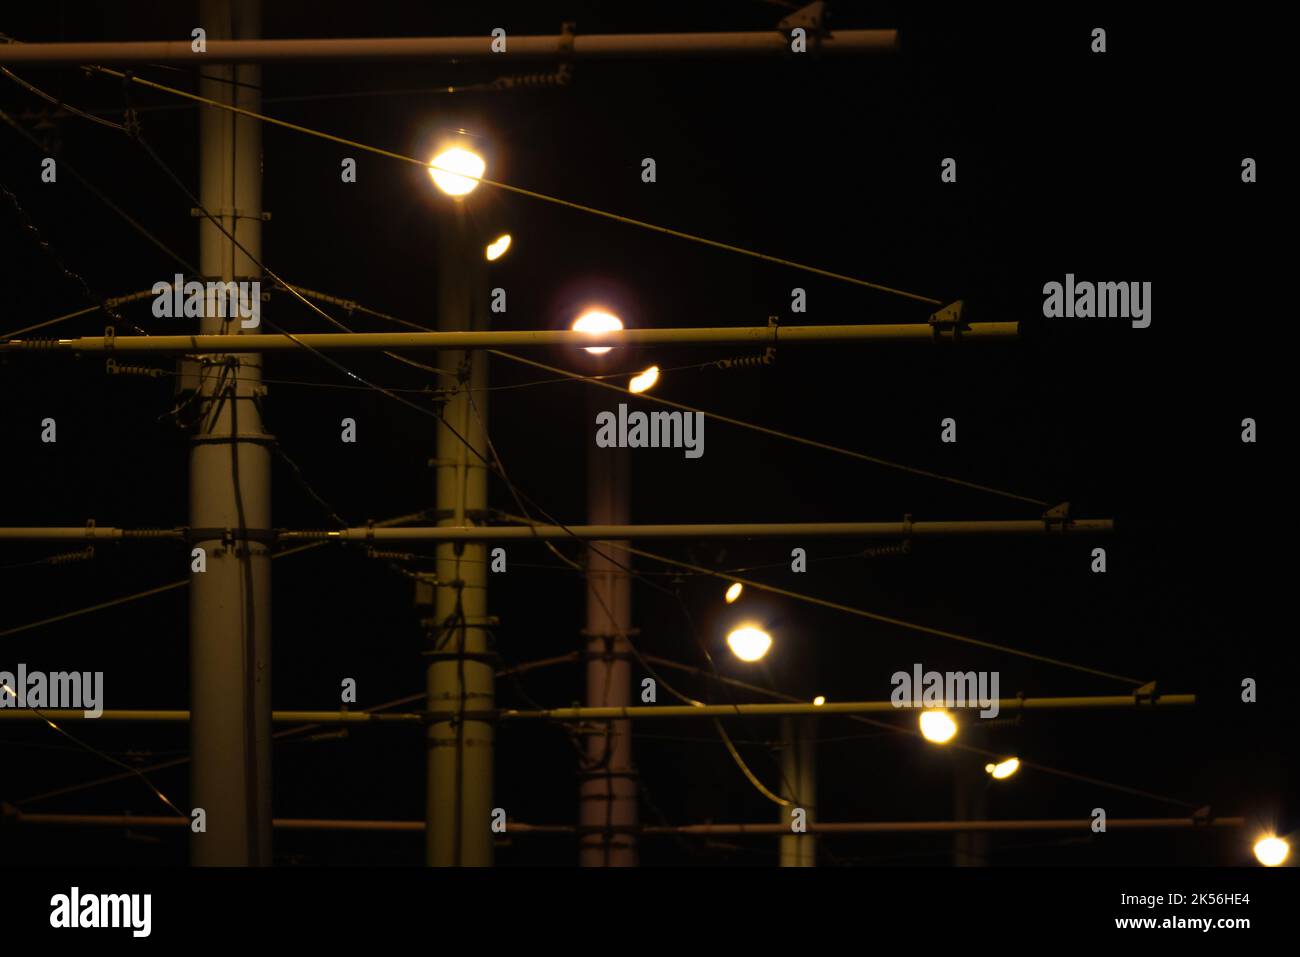 Le luci della strada e i fili del tram sono sullo sfondo del cielo scuro. Foto astratta della notte urbana Foto Stock